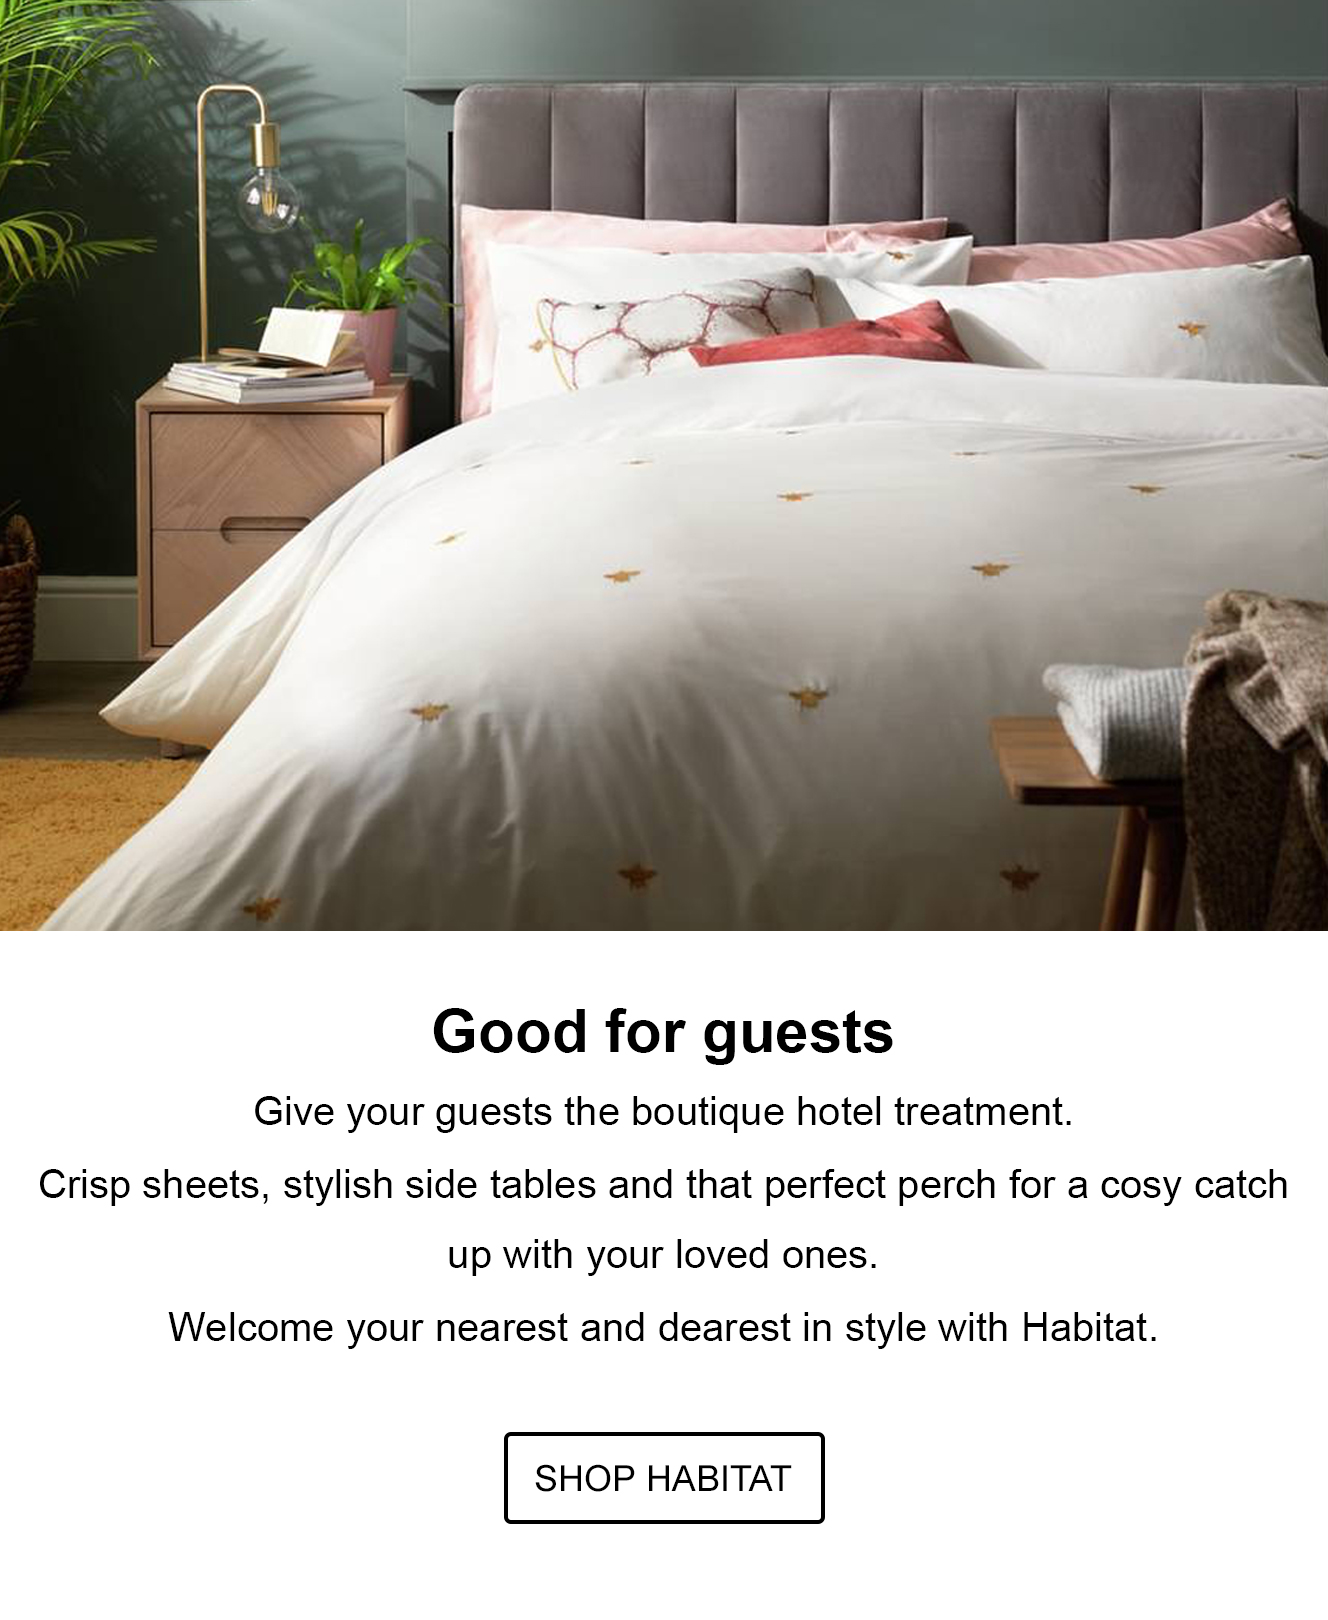 Good for guests. Shop Habitat.